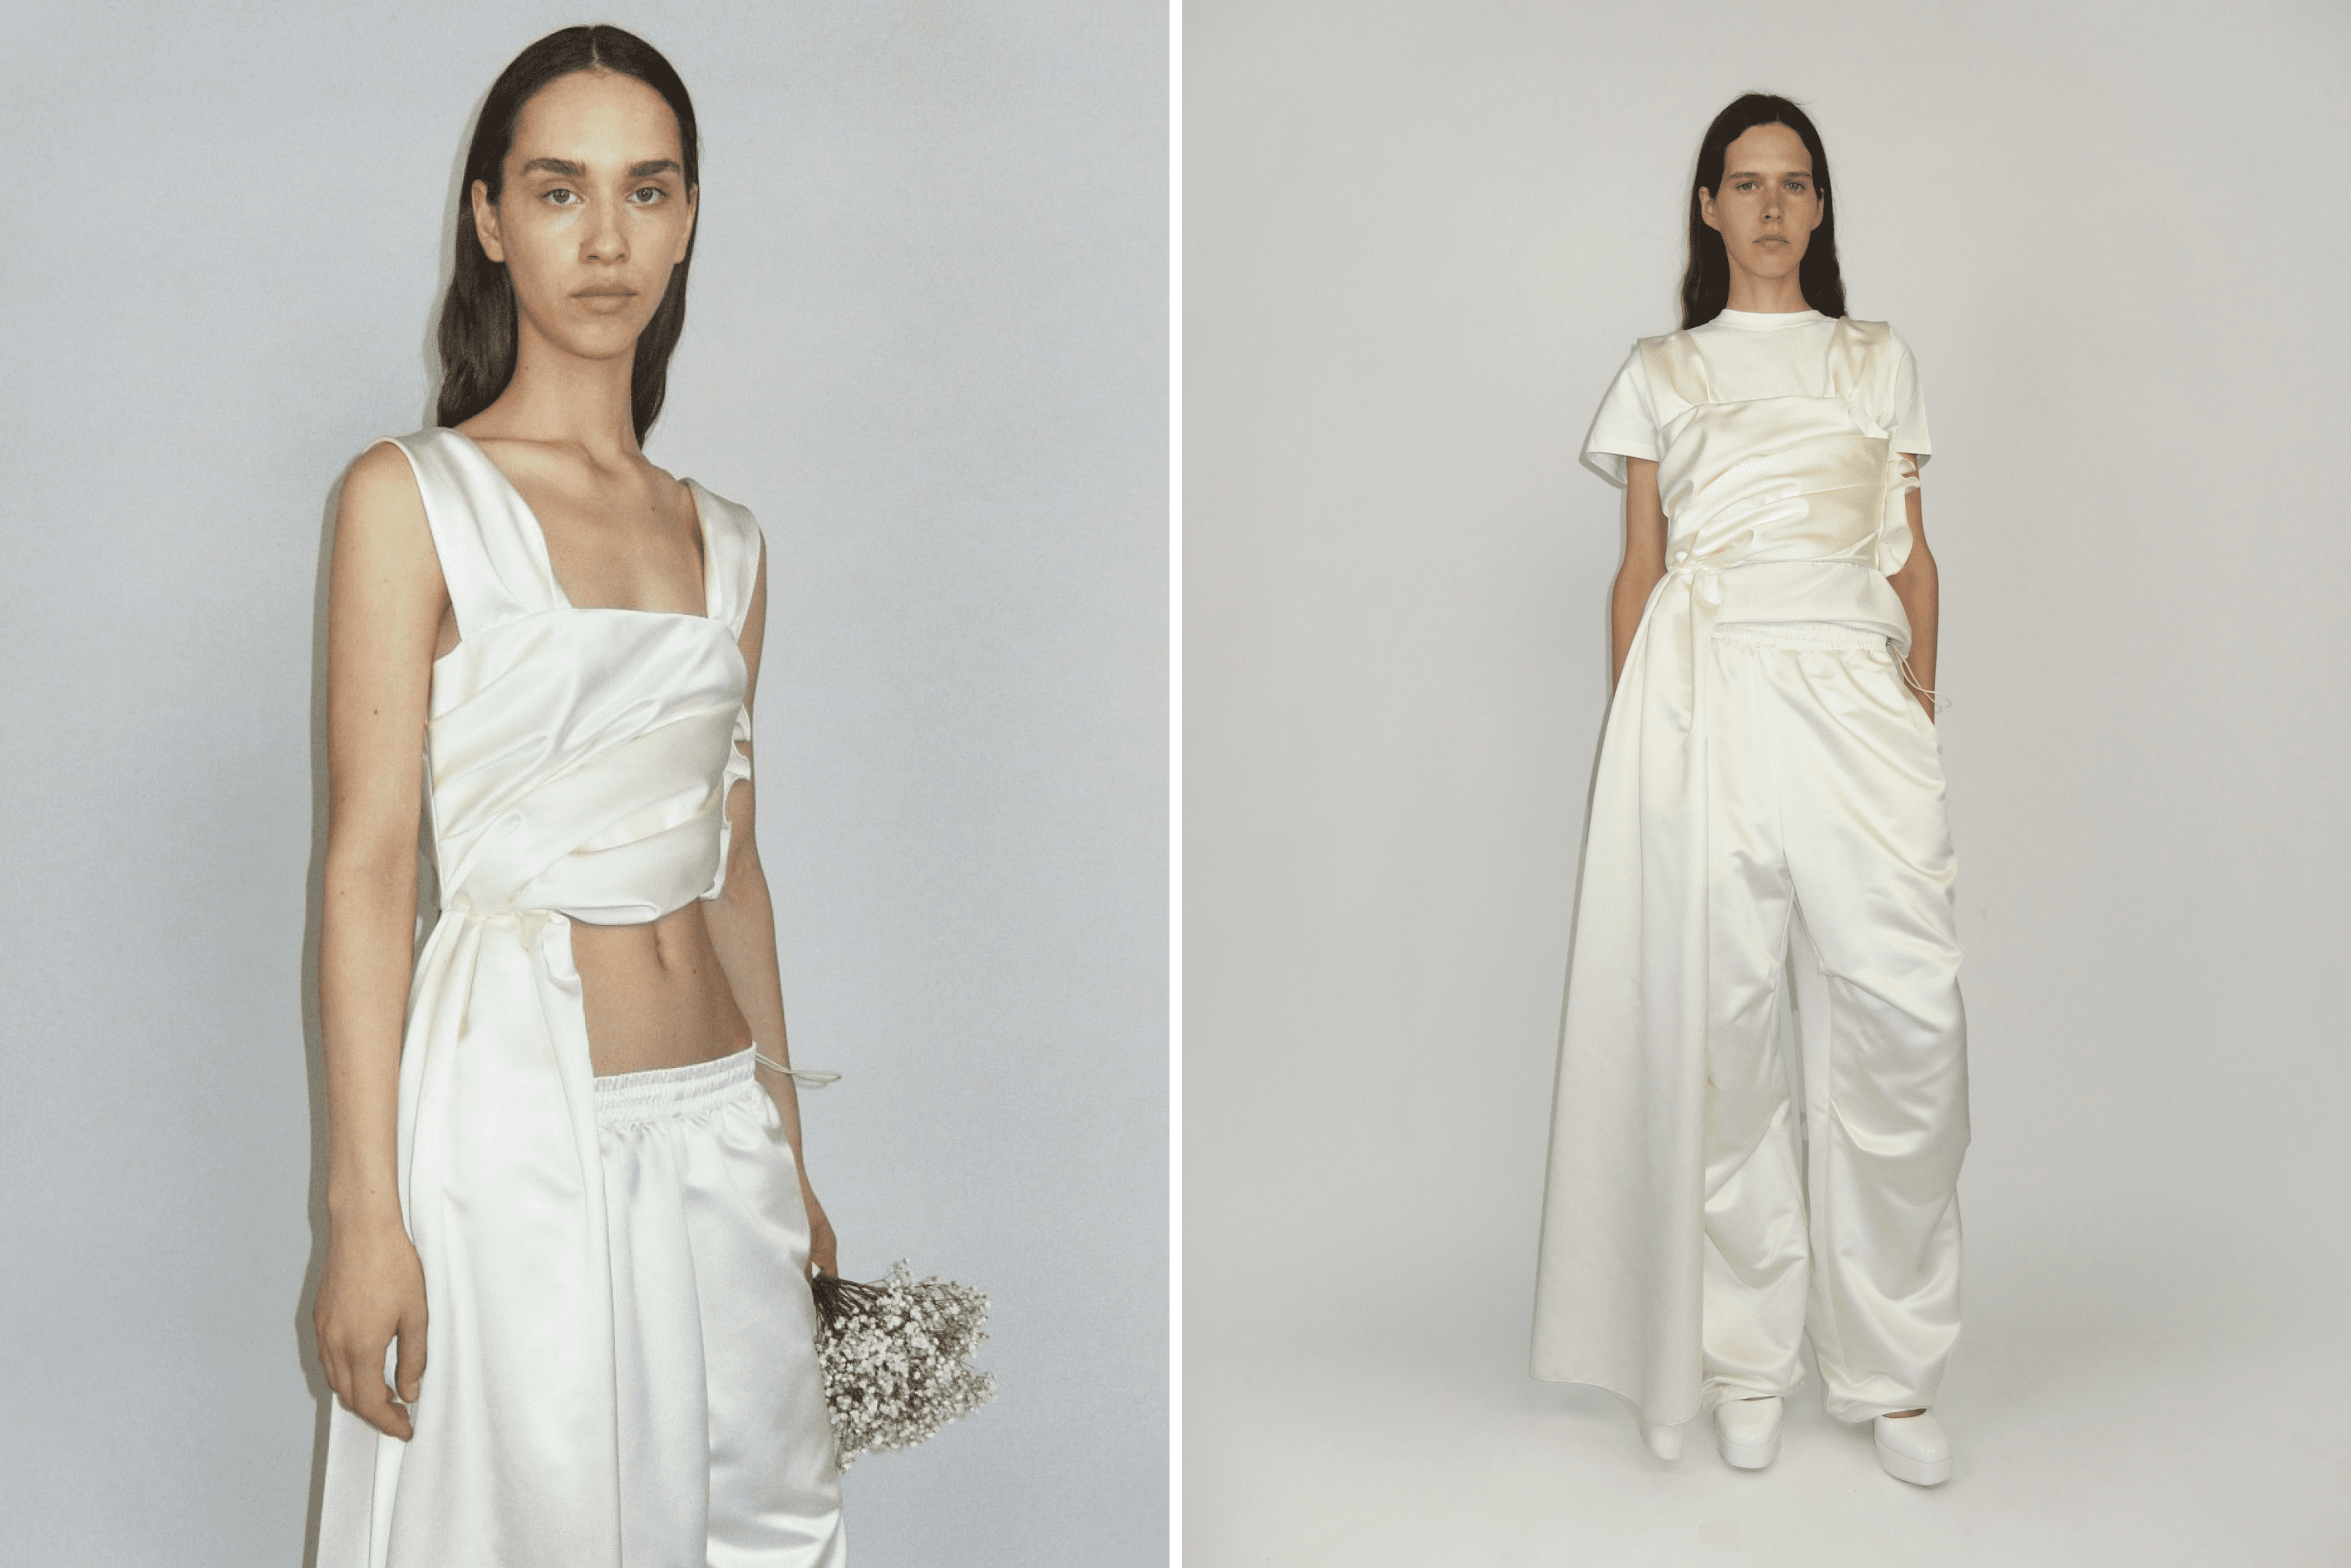 Купить брендовое модное женское нижнее белье года в интернет-магазине natali-fashion.ru с доставкой